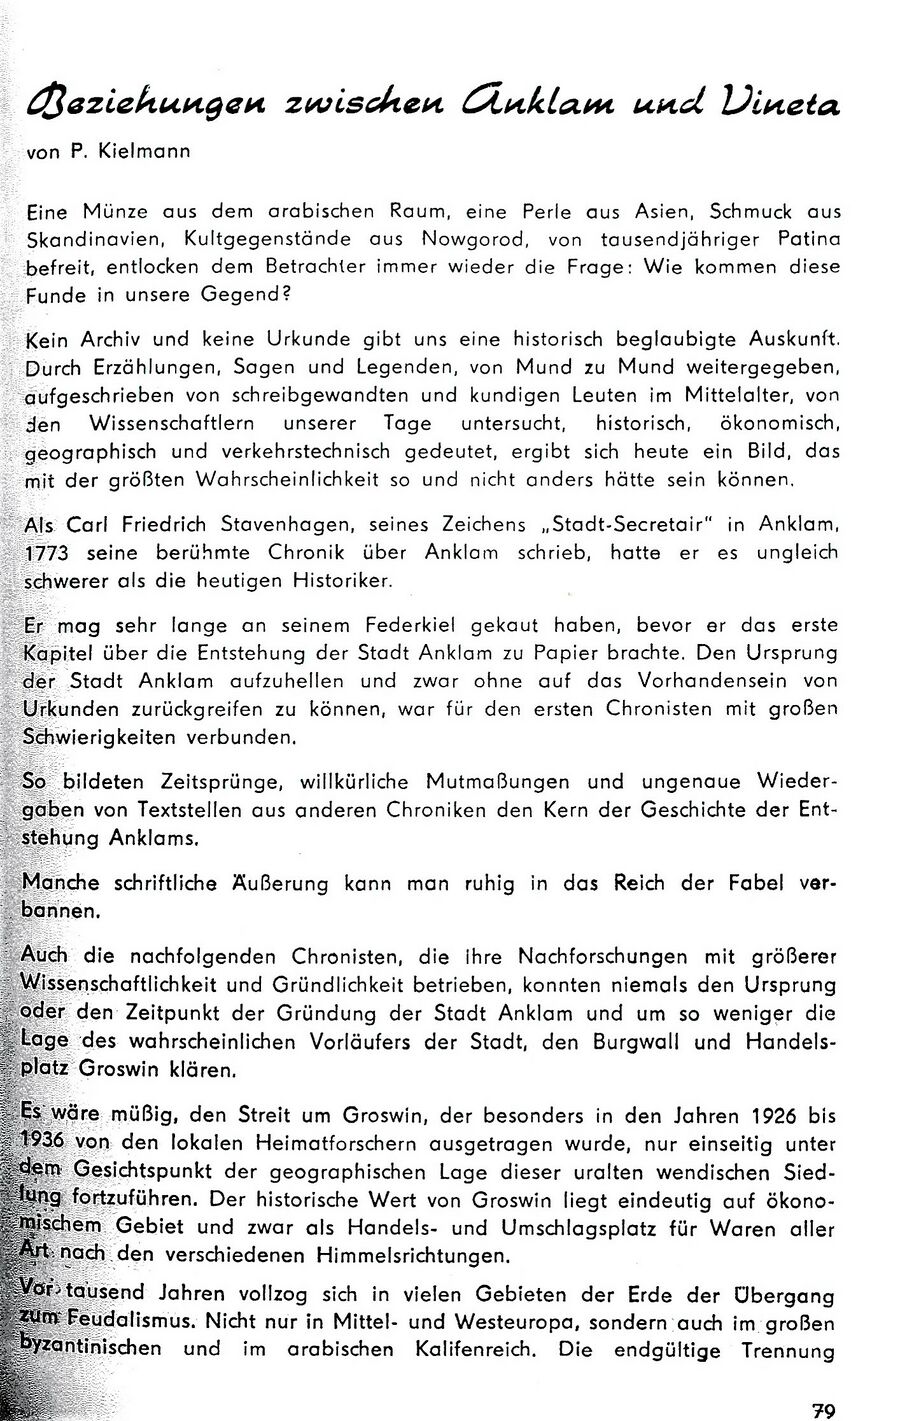 Kielmann Anklam Vineta 1976 AHK 79